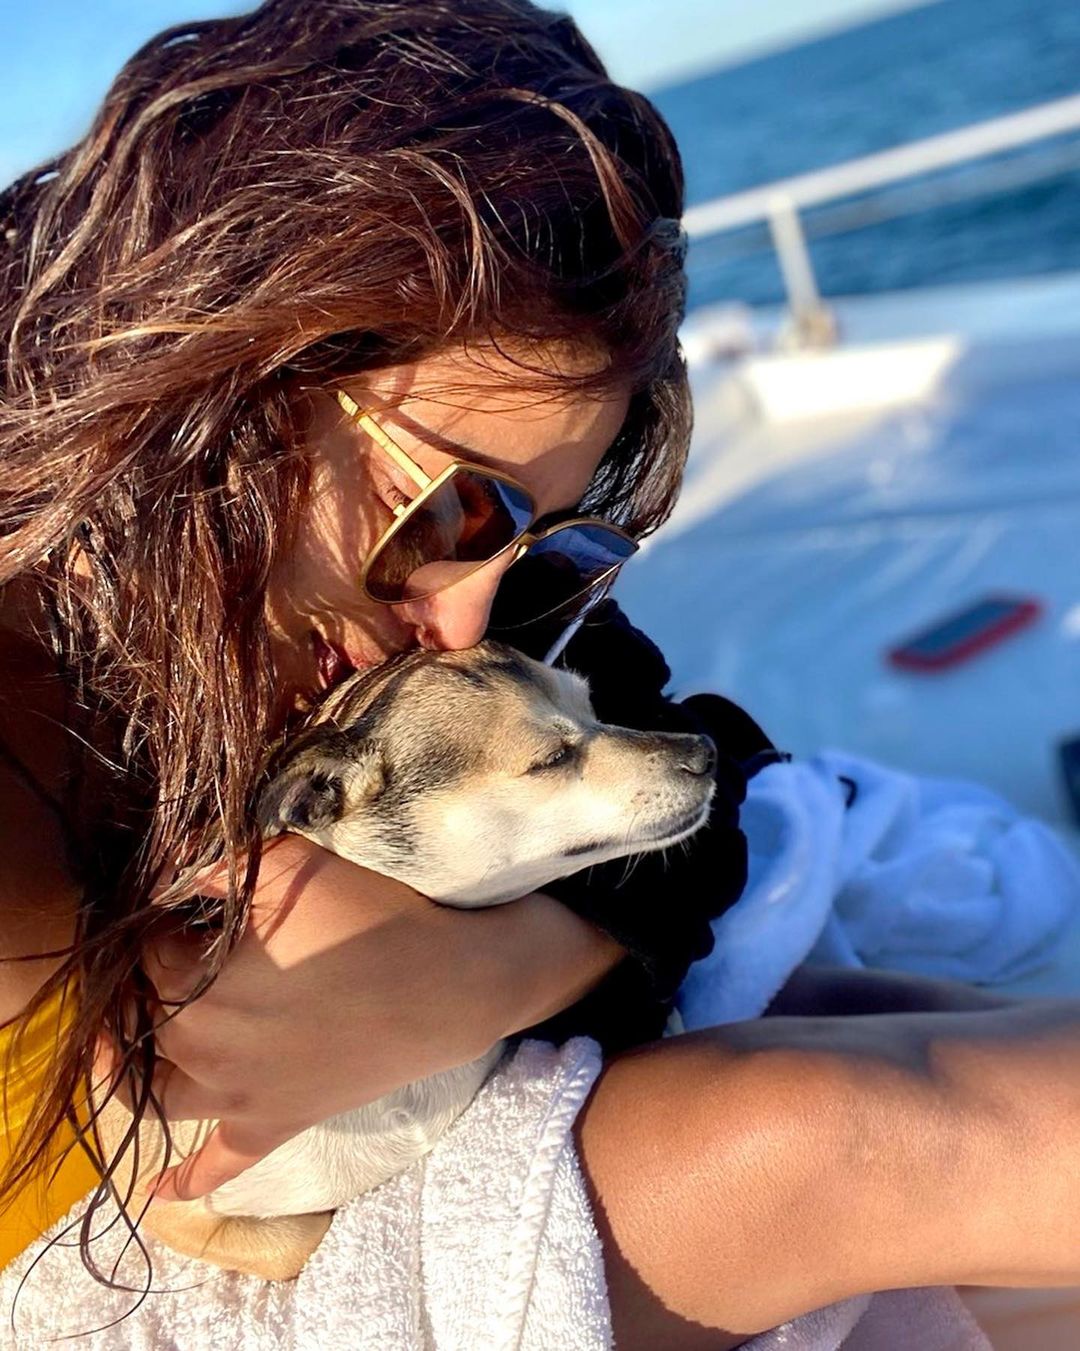 Photos n°3 : Priyanka Chopra is On a Boat!